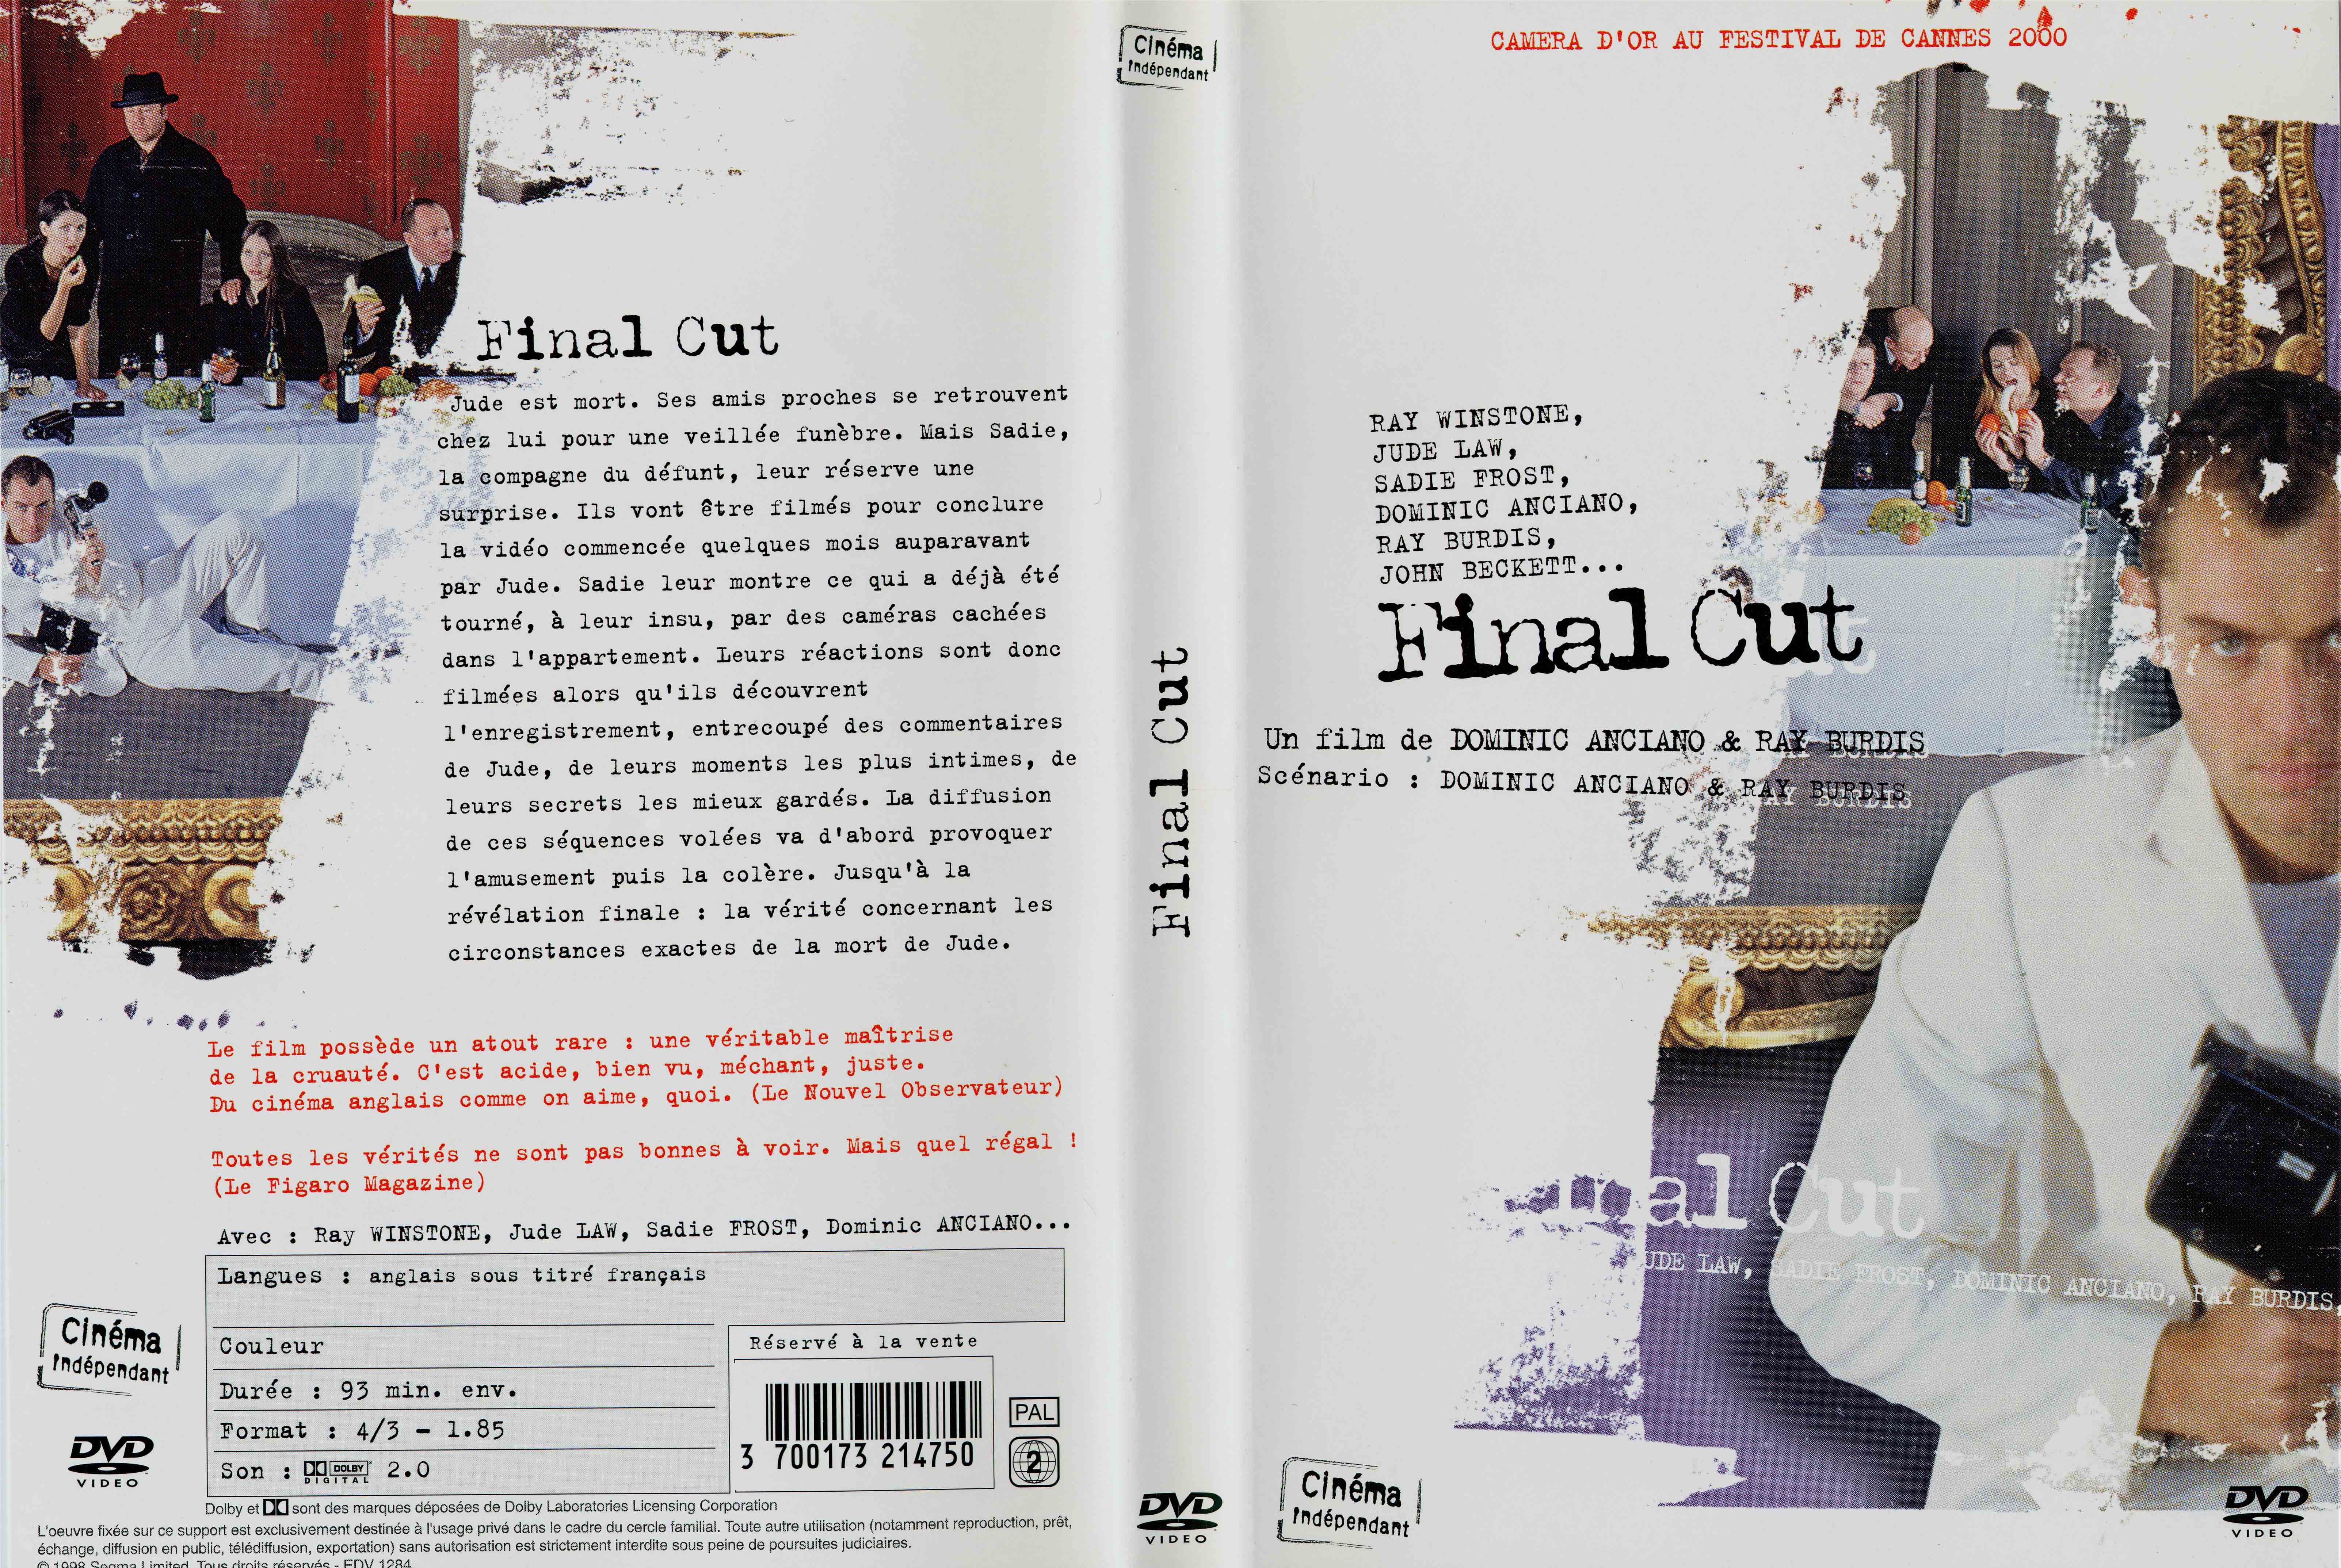 Jaquette DVD Final cut (2000)